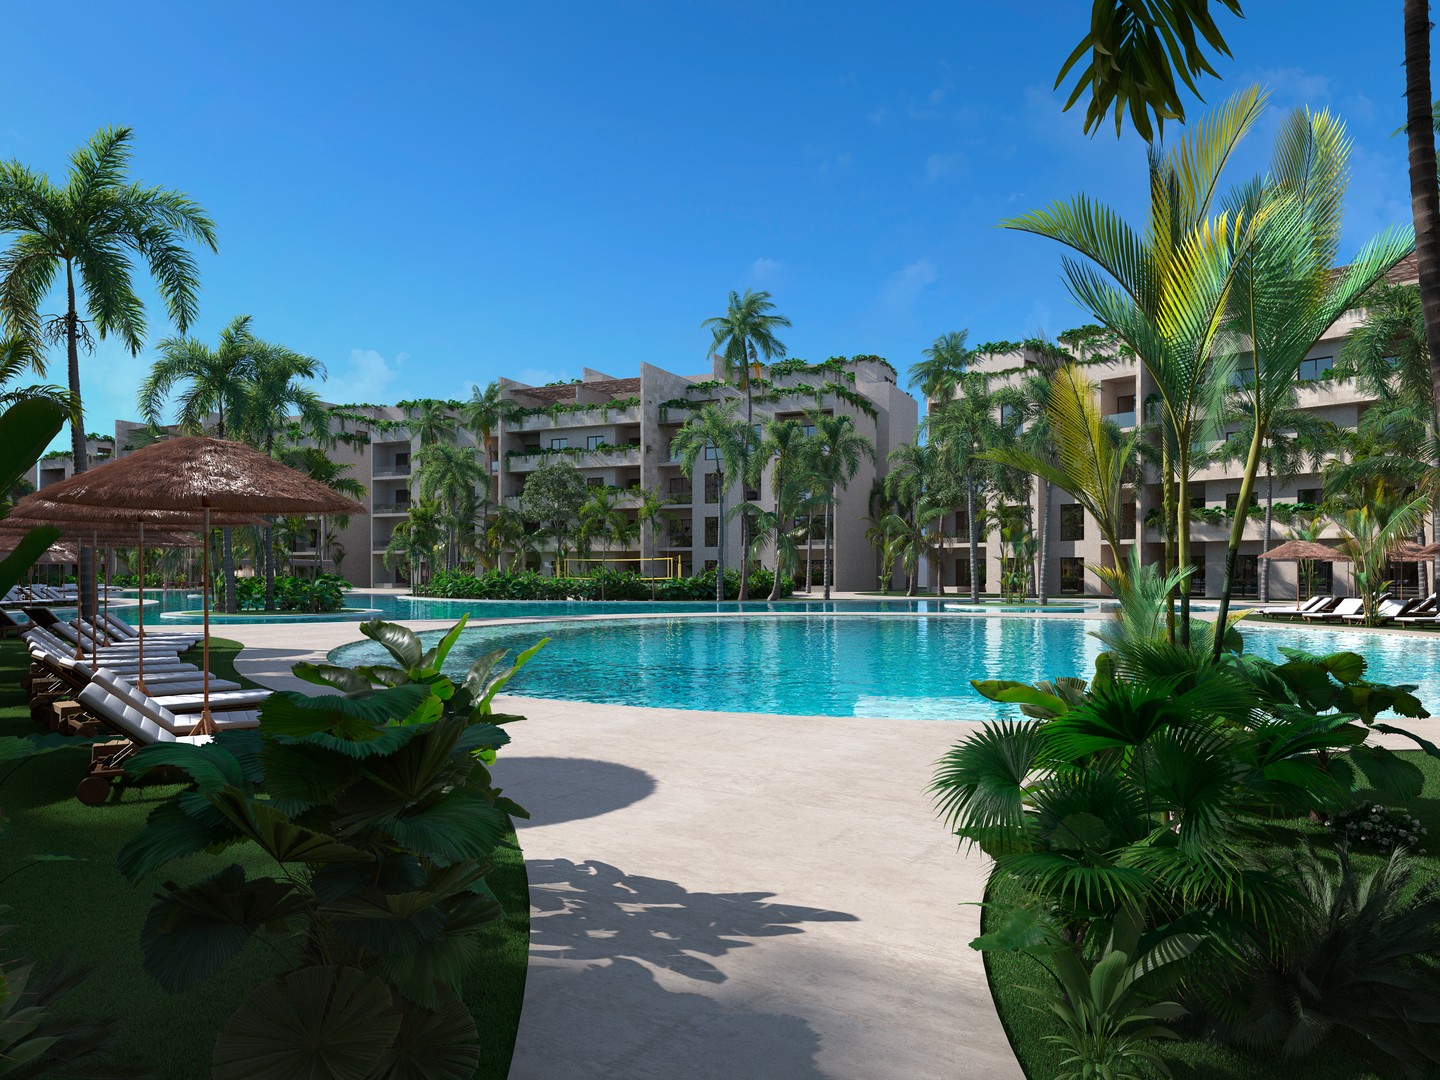 Proyecto de apartamentos y villas en venta en Punta Cana, a pasos de la playa.  1